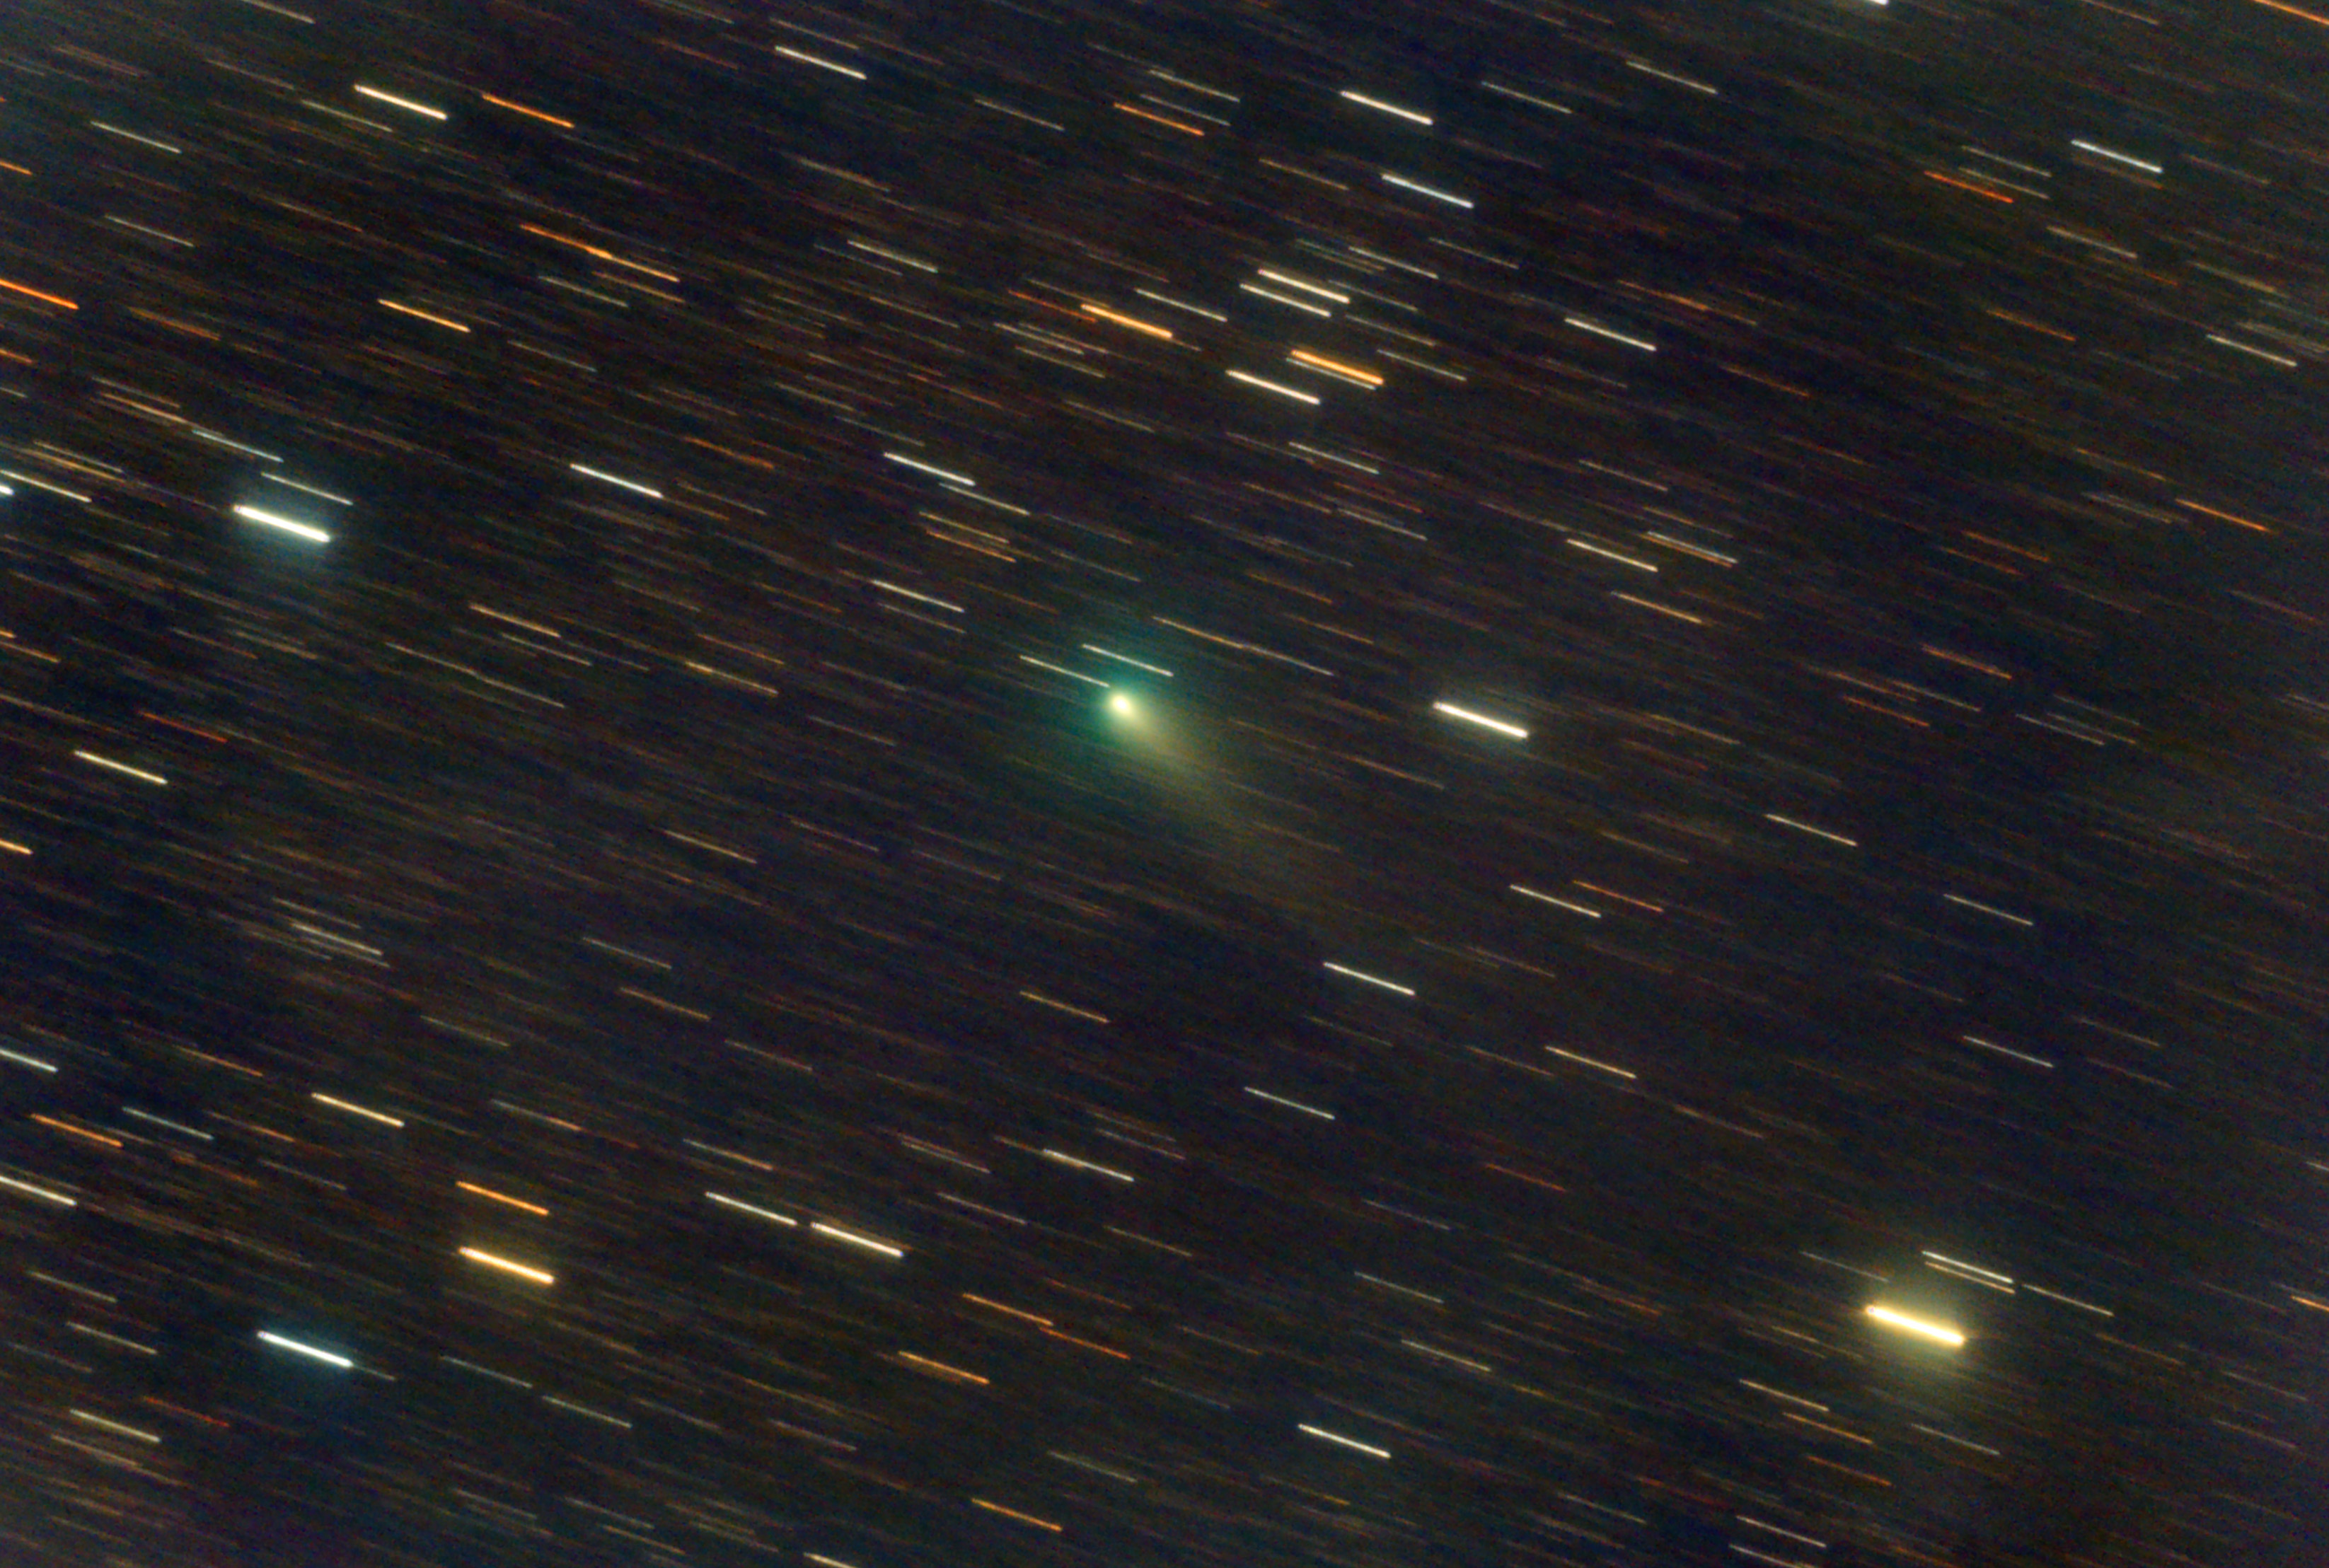 Comète 21P/Giacobini-Zinner au 06 08 2018